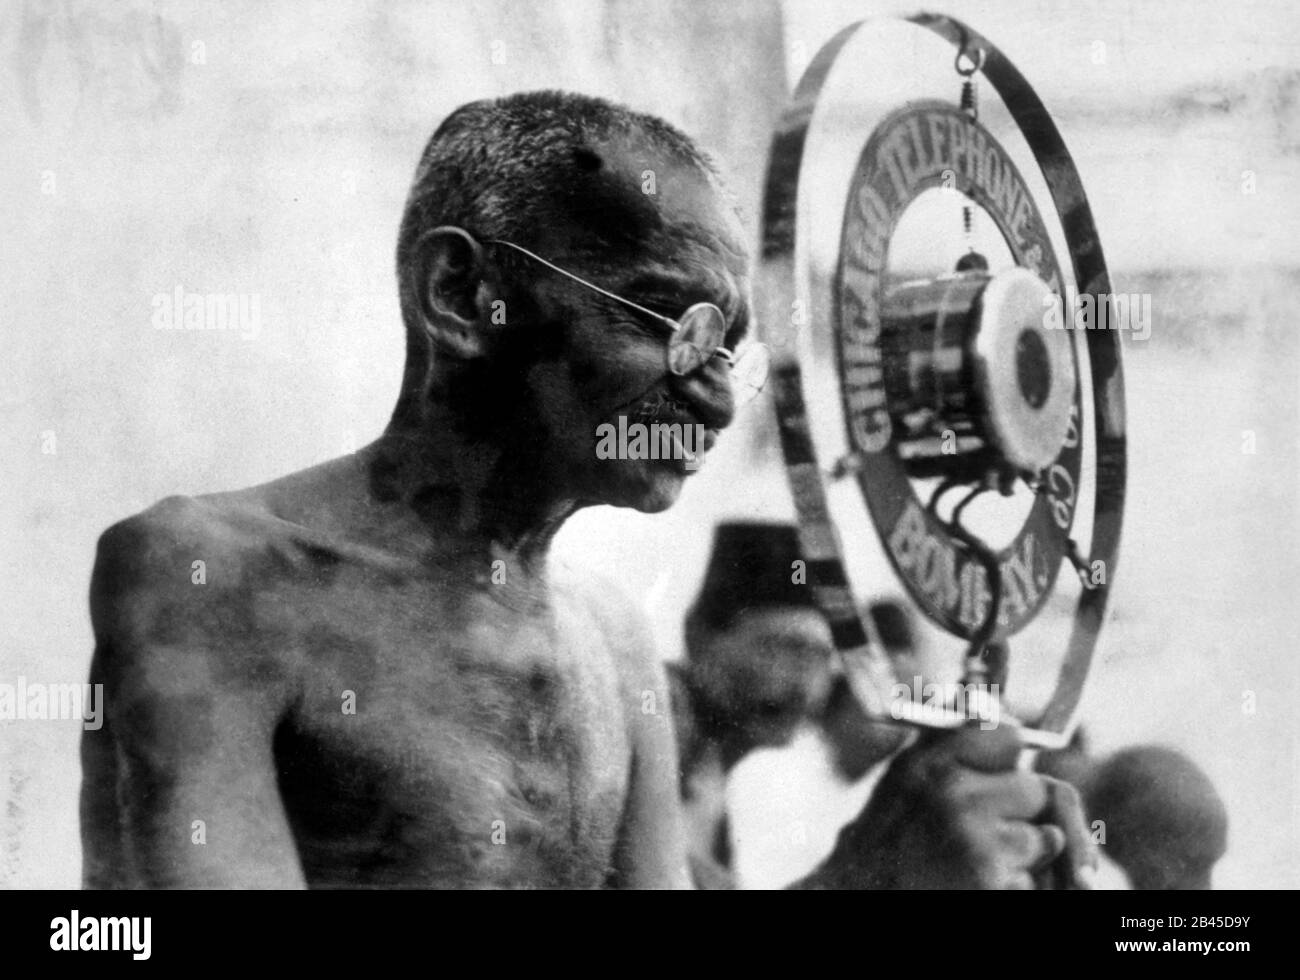 Mahatma Gandhi speaking, Chicago Telephone & Radio Company microphone, Bombay, Mumbai, Maharashtra, India, Asia, 1930s, old vintage 1900s picture Stock Photo